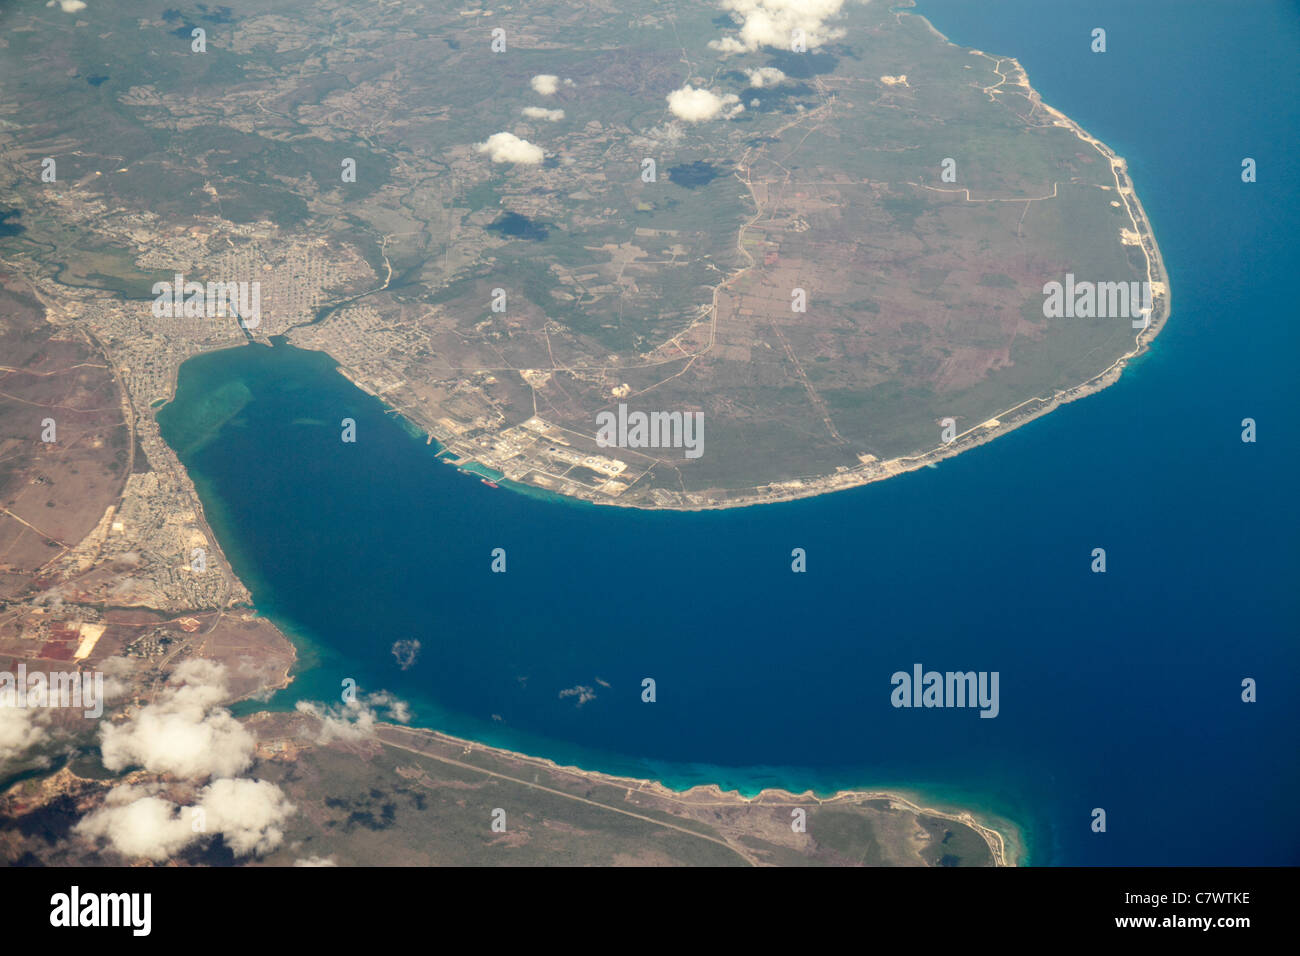 Cuba,Matanzas,mer des Caraïbes,eau,Bahia de Matanzas,baie,port,port,vue aérienne depuis le dessus,35,000 pieds,terre,nuages,eau,géographie,topogra Banque D'Images